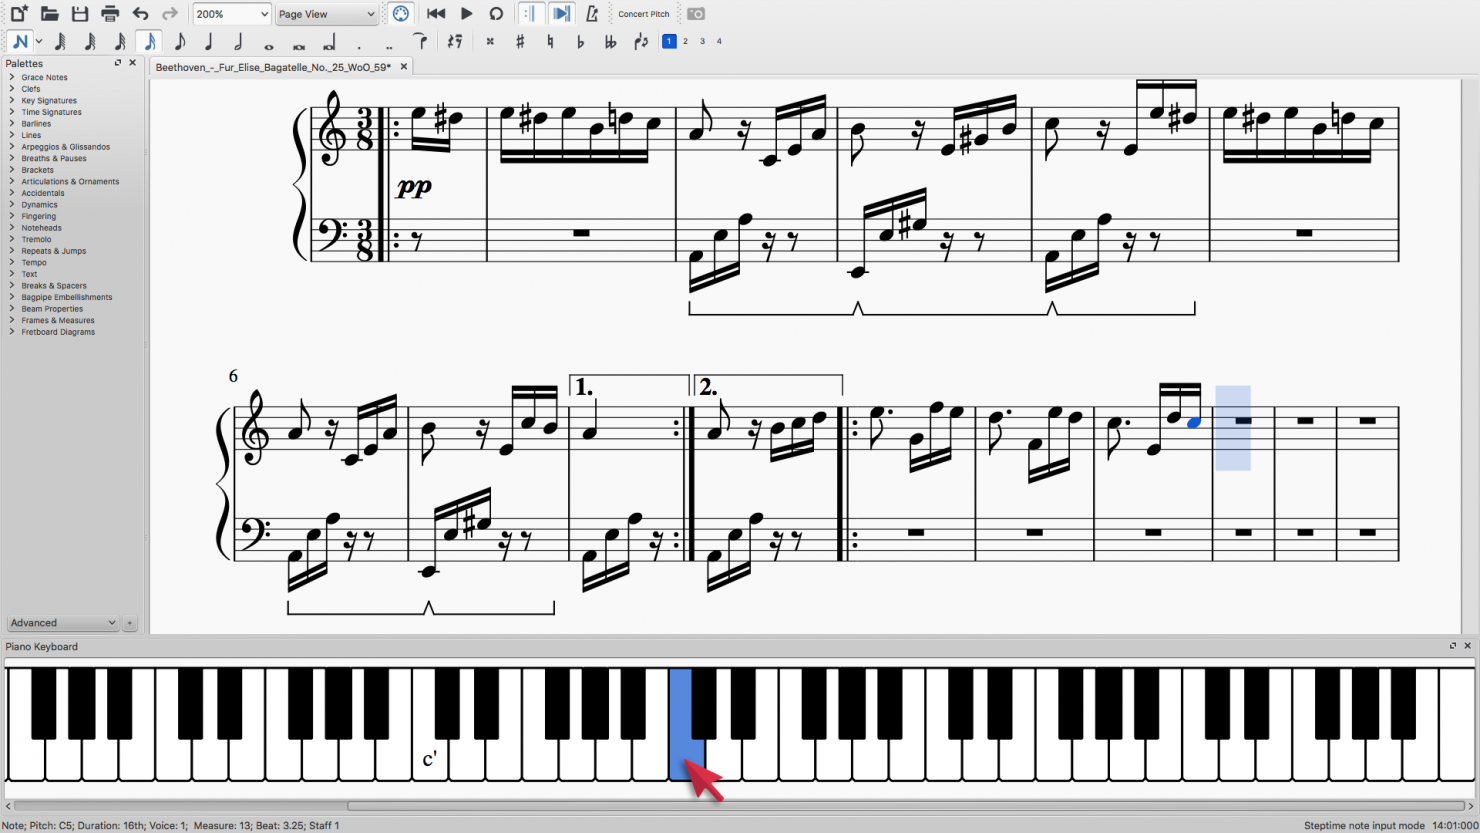  Saisie des notes dans MuseScore avec le clavier de piano à l'écran